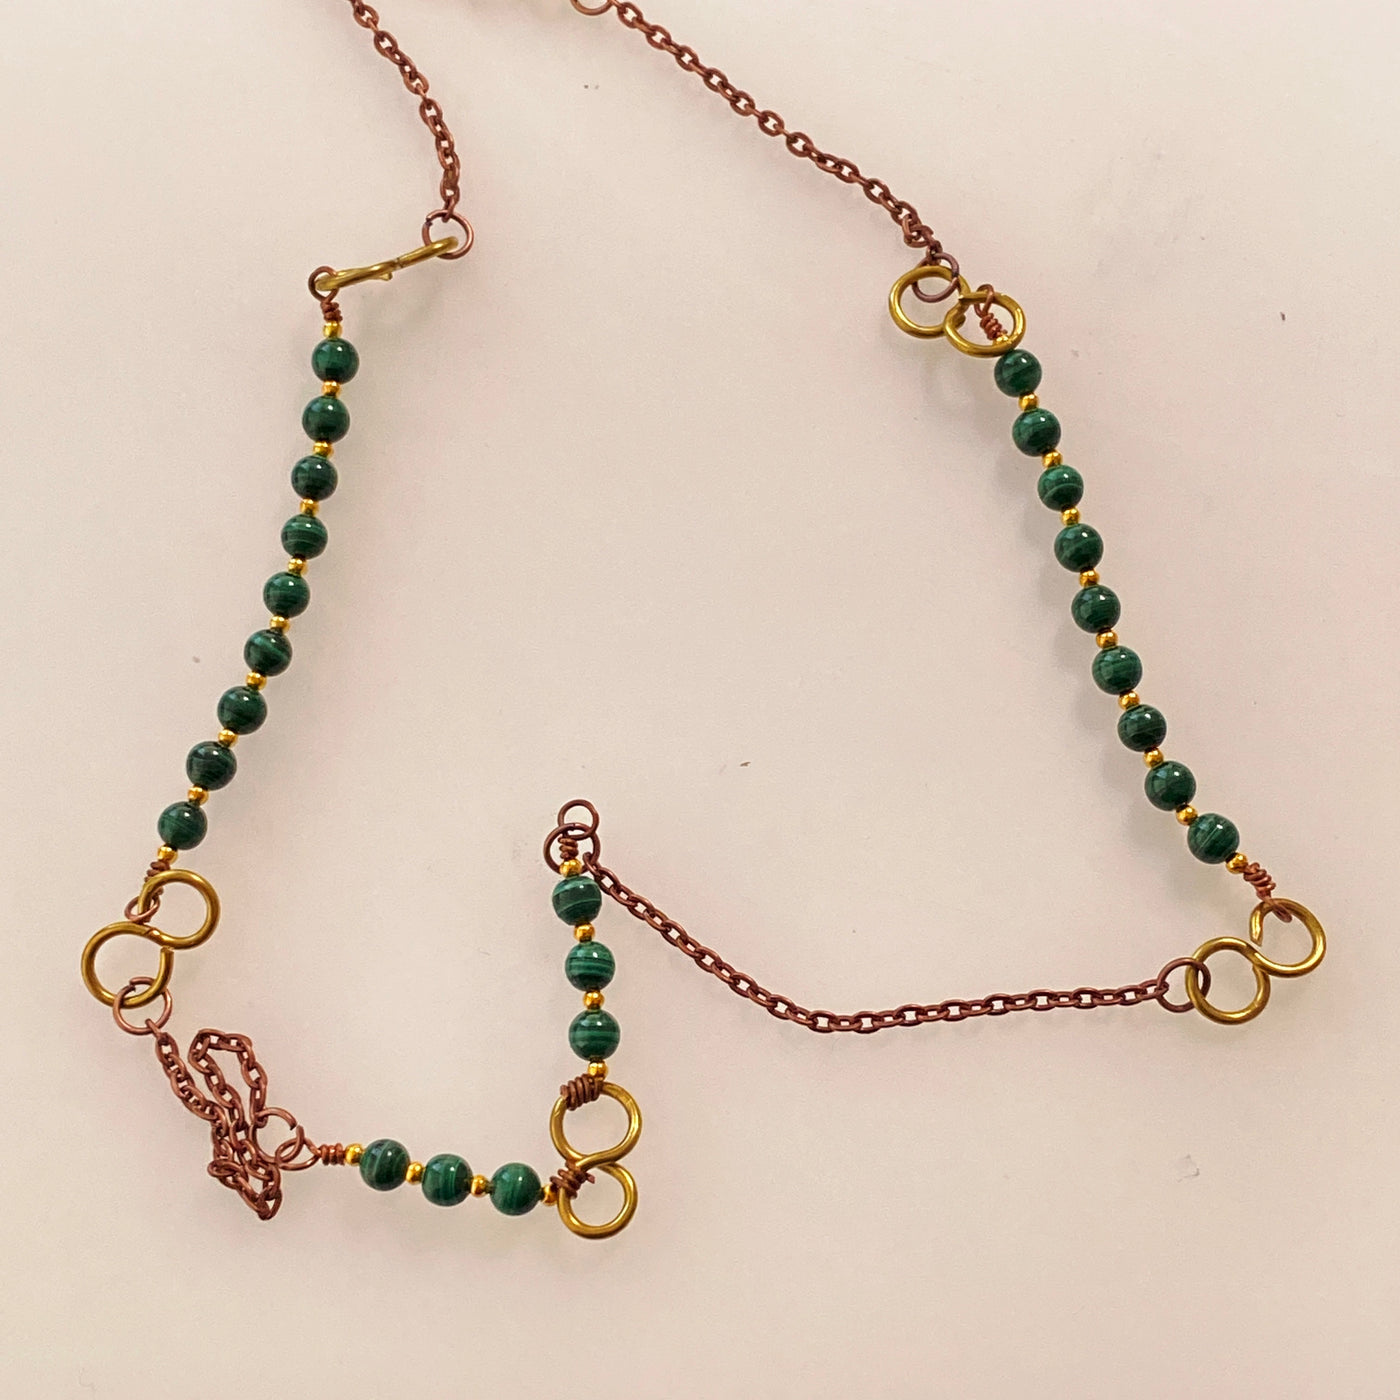 Halskette aus Malachit und Kupfer aus der Lines-Kollektion.